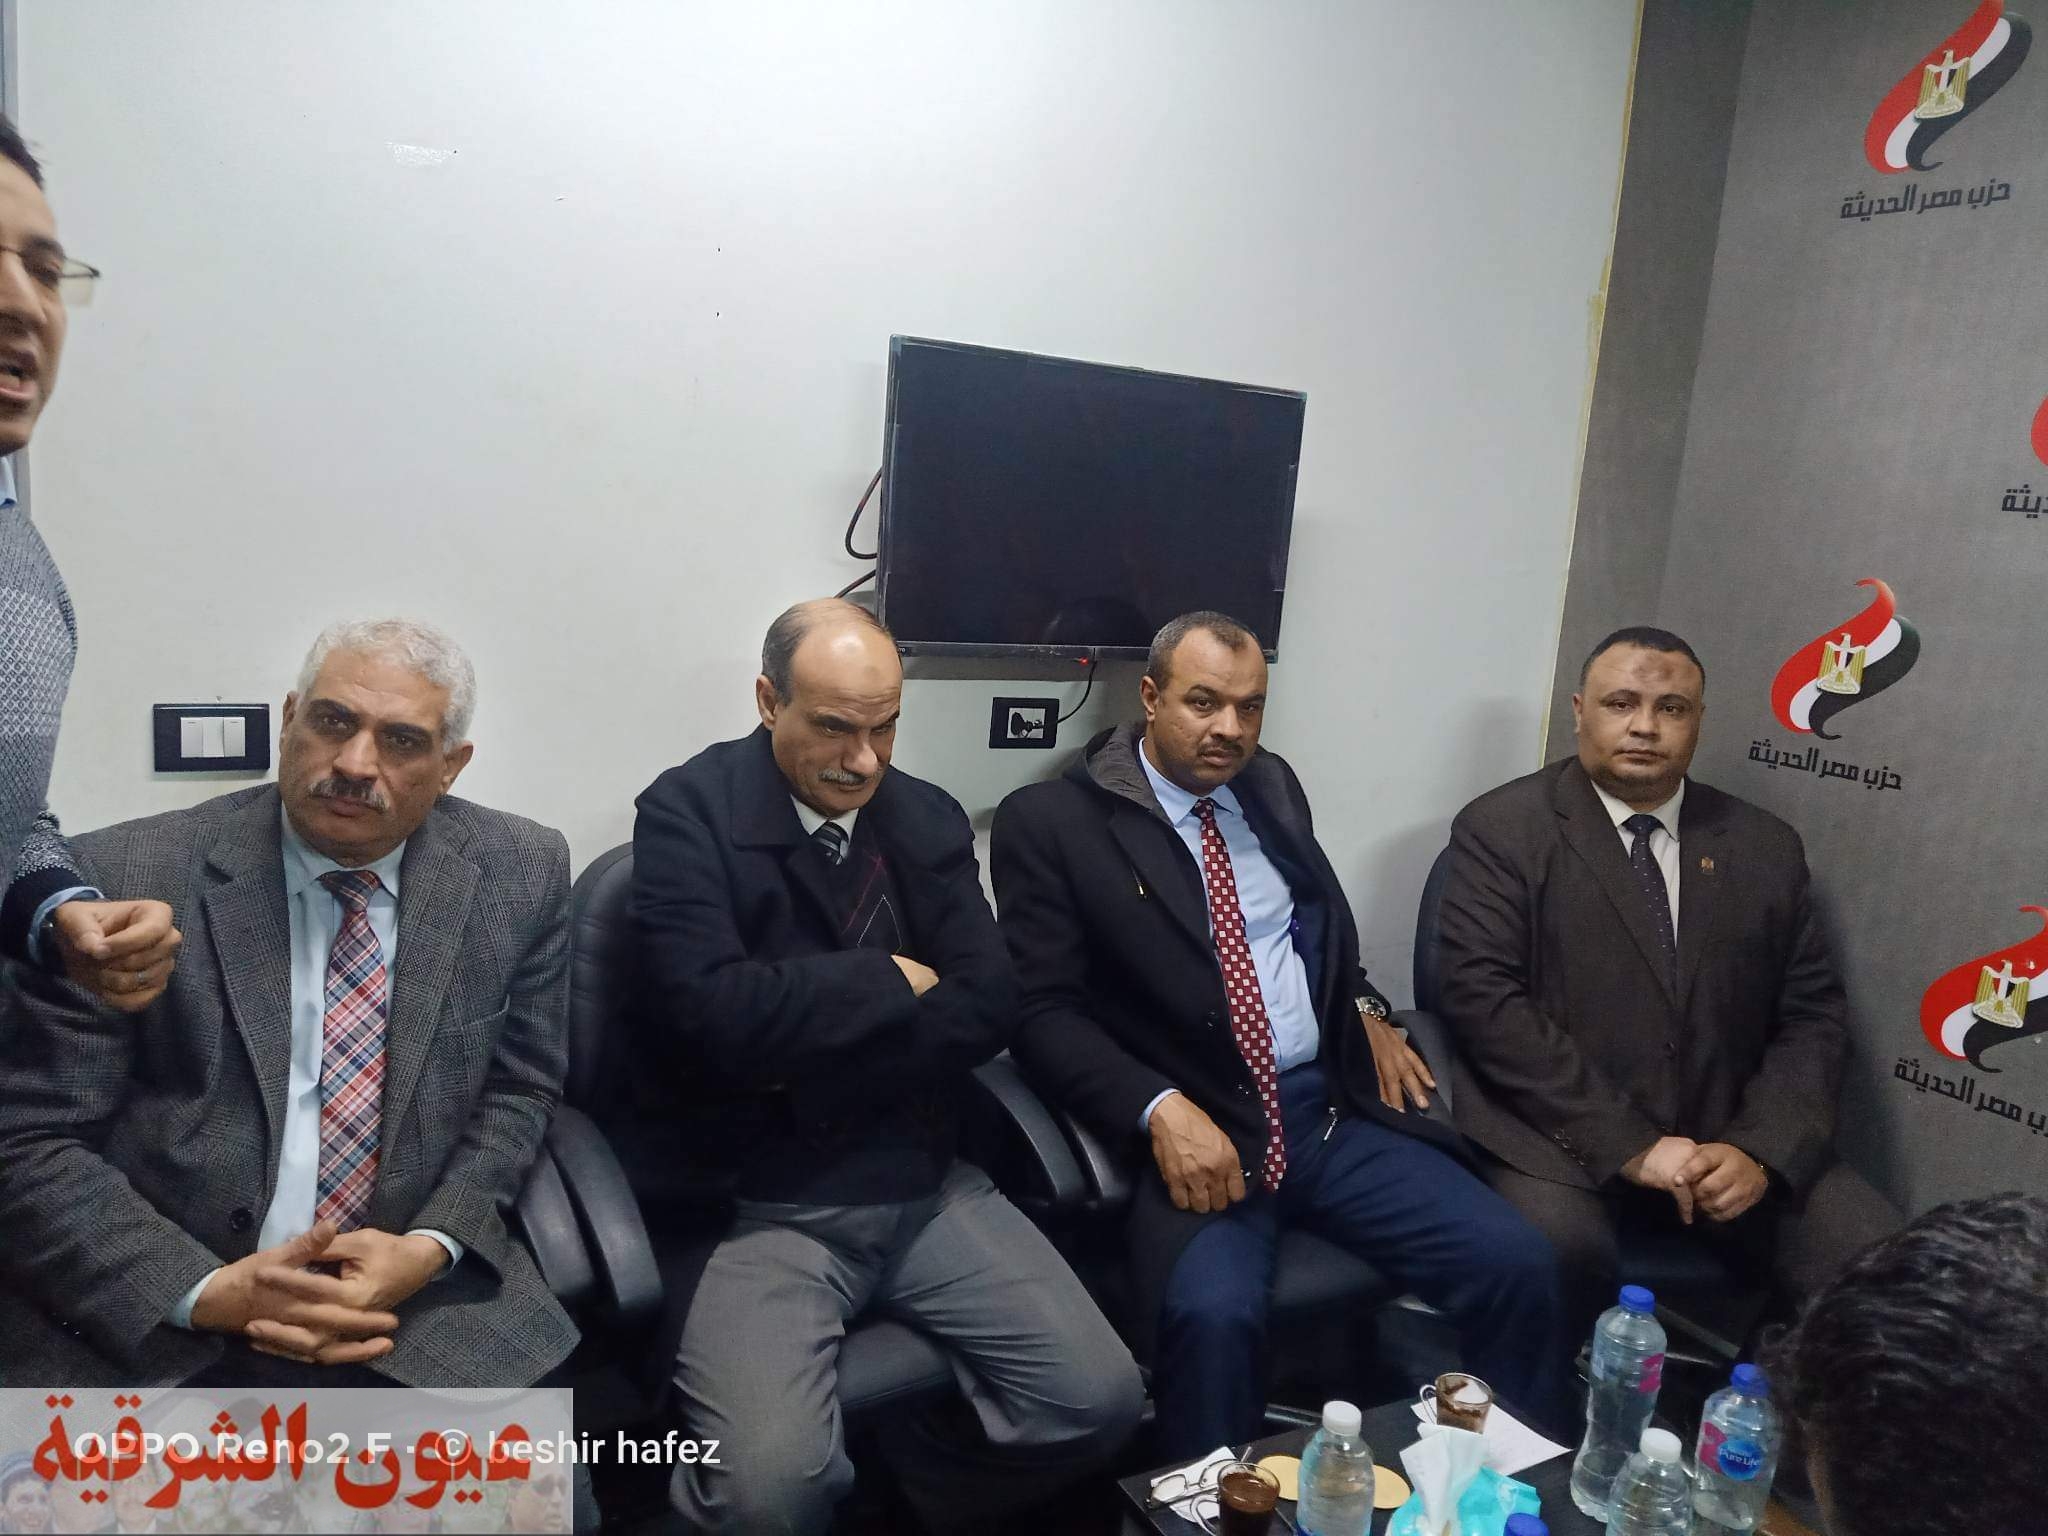 حزب مصر الحديثة بالشرقية يطلق أولى سلسلة ندوات المبادرة الرئاسية « مراكب النجاة » لمكافحة الهجرة غير الشرعية